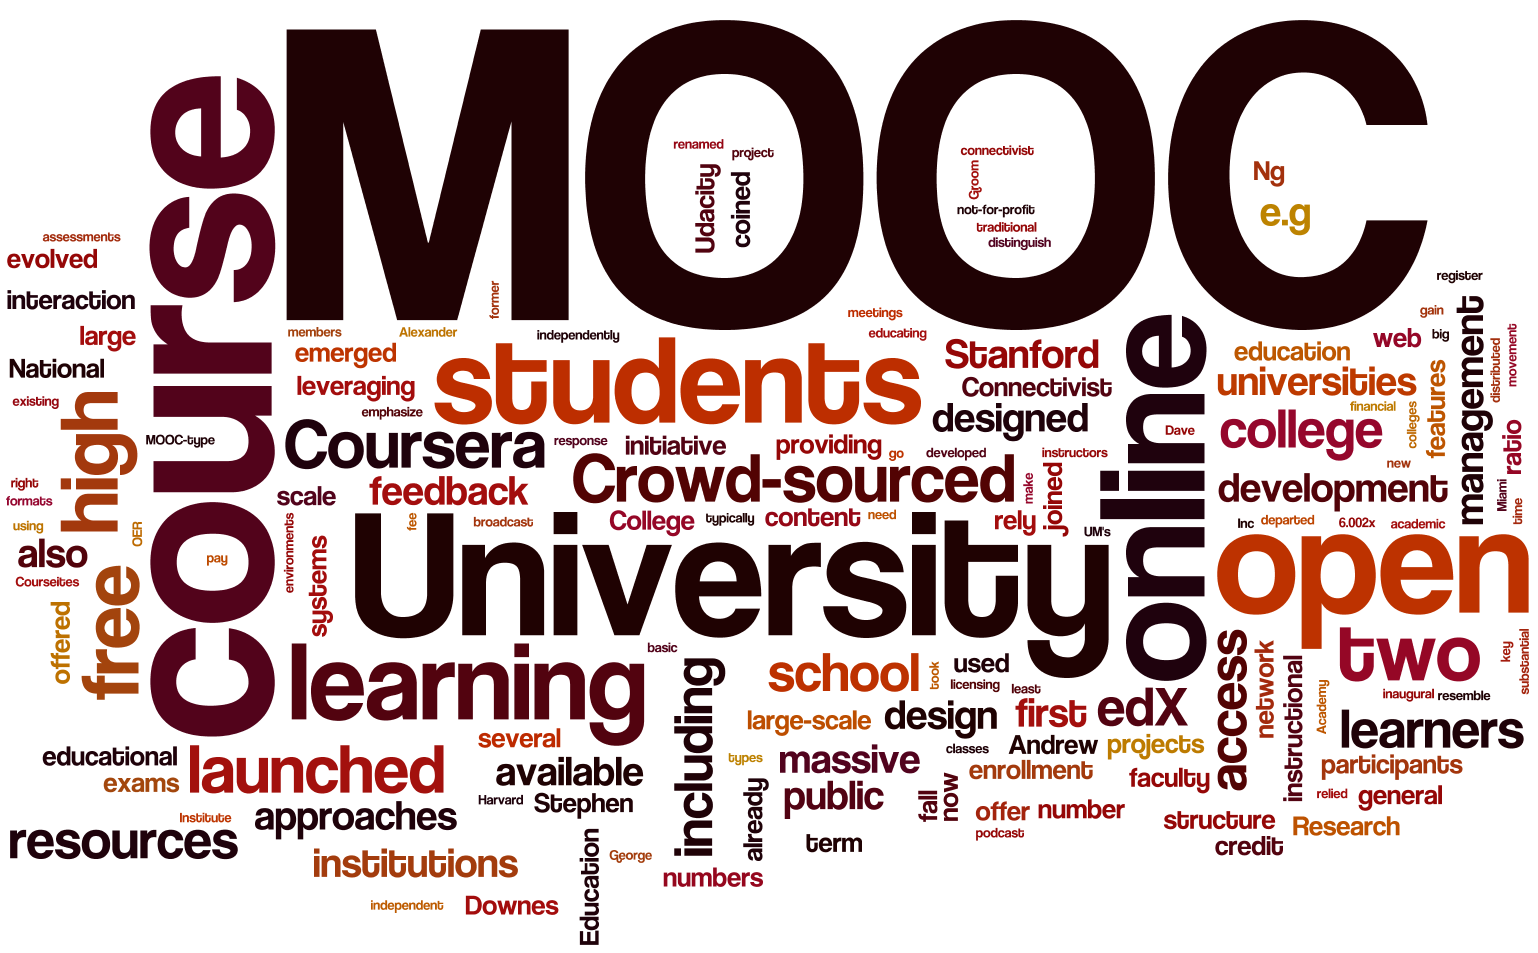 MOOC courses